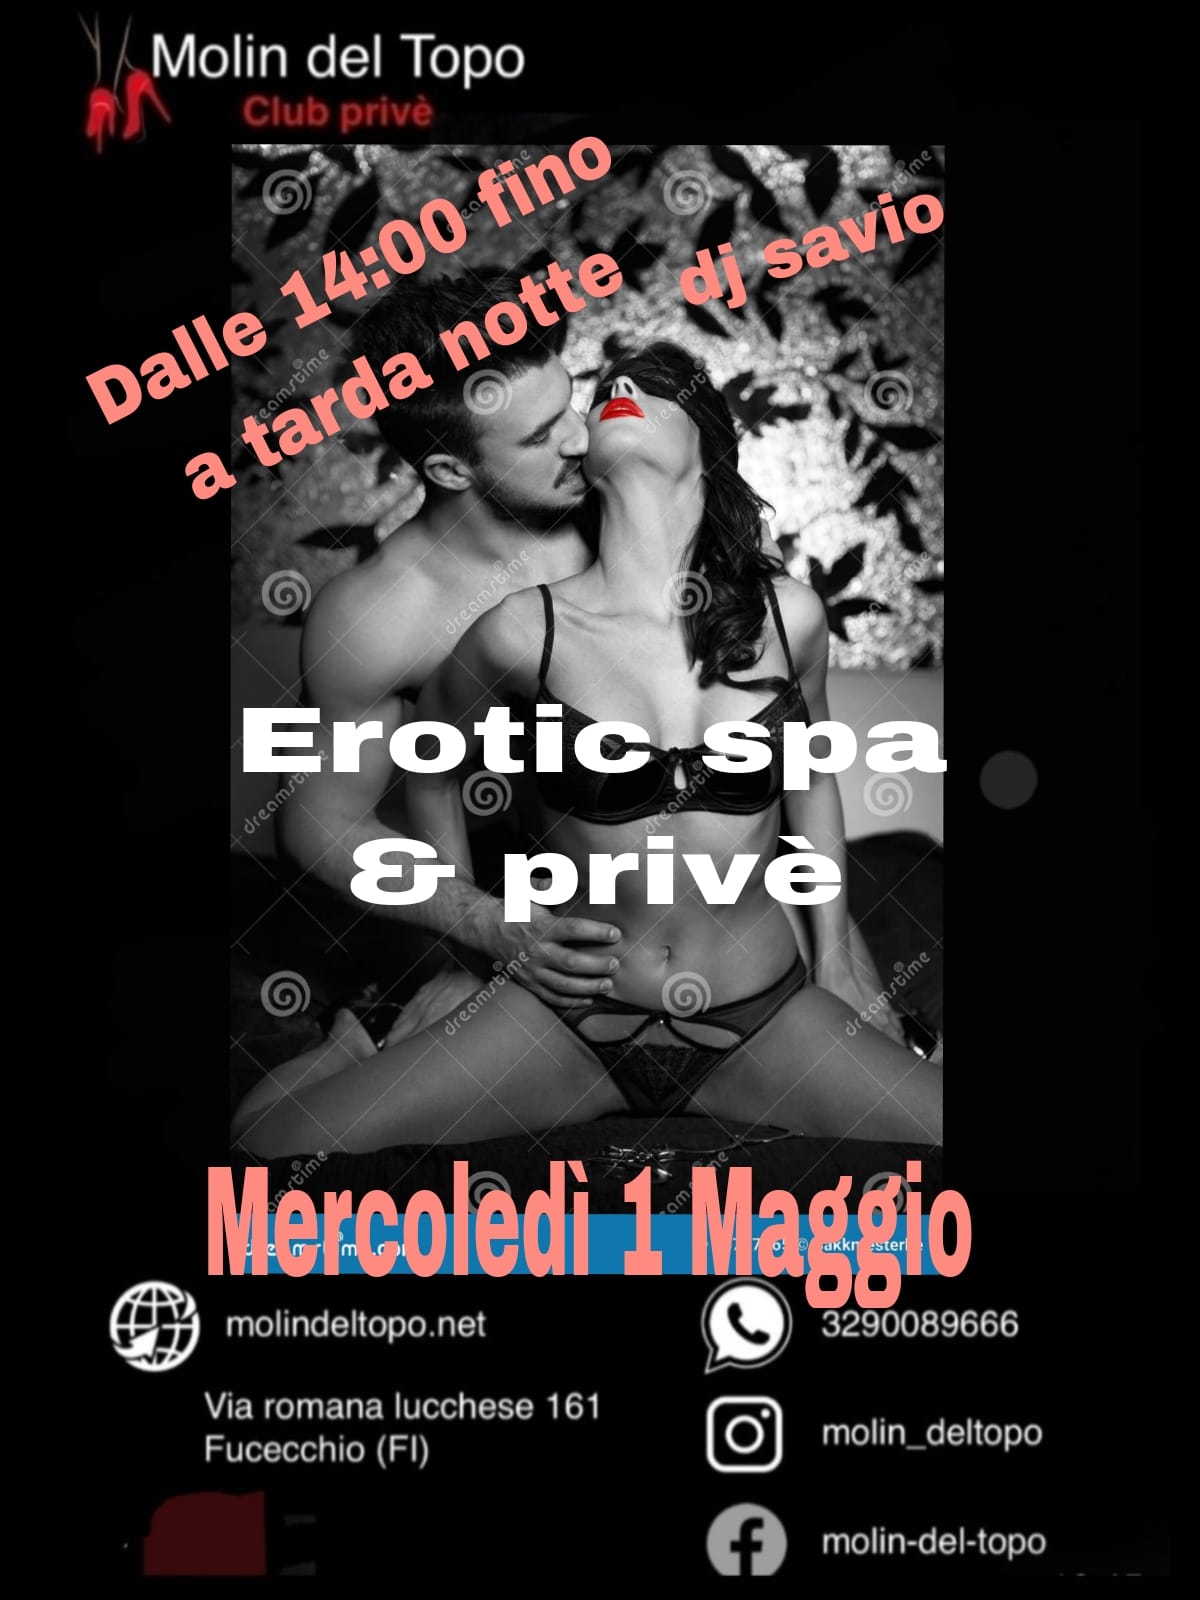 Mercoledì 1 Maggio – Erotic Spa e Privè – Dalle 14:00 fino a tarda notte